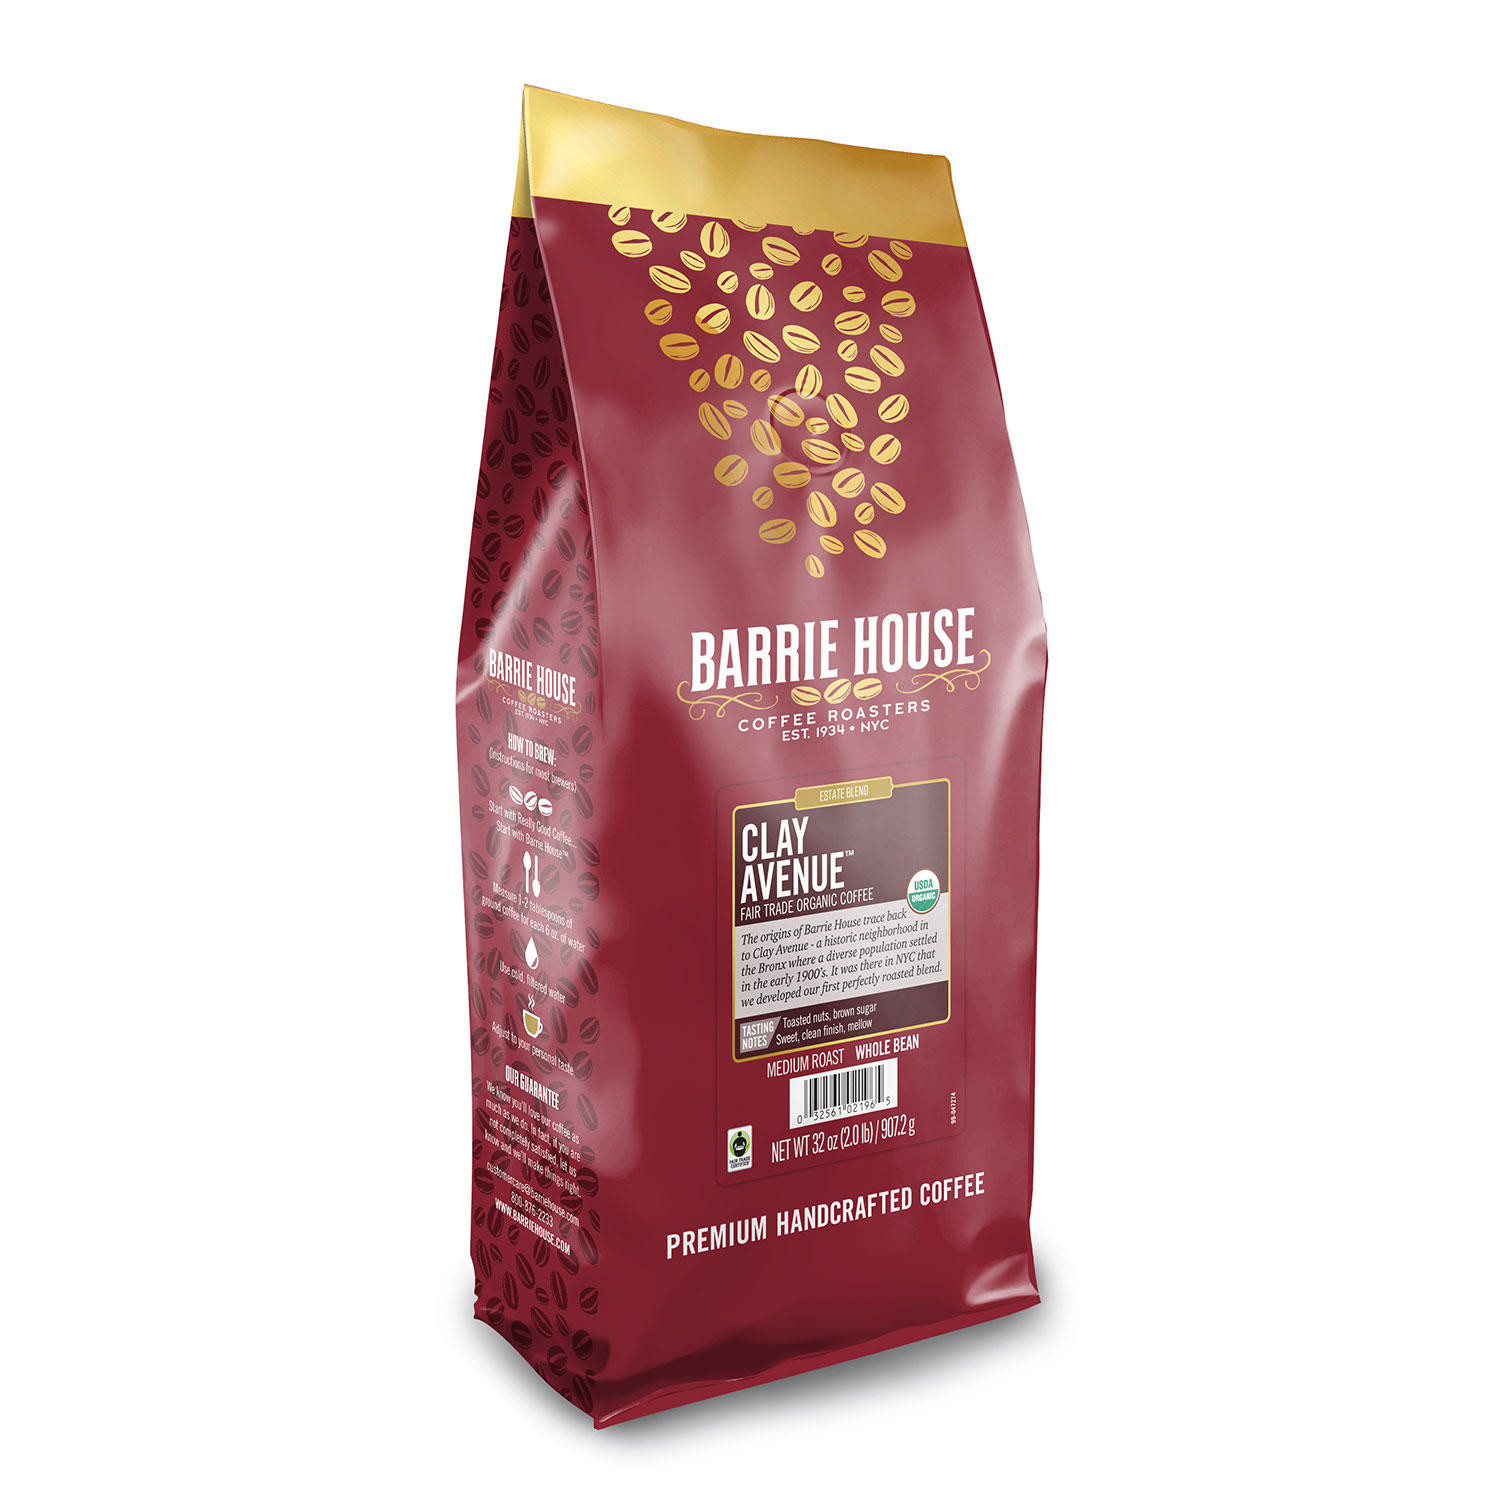 [SET OF 3] - Barrie House Fair Trade Organic Whole Bean Coffee, Clay Avenue (32 oz.),